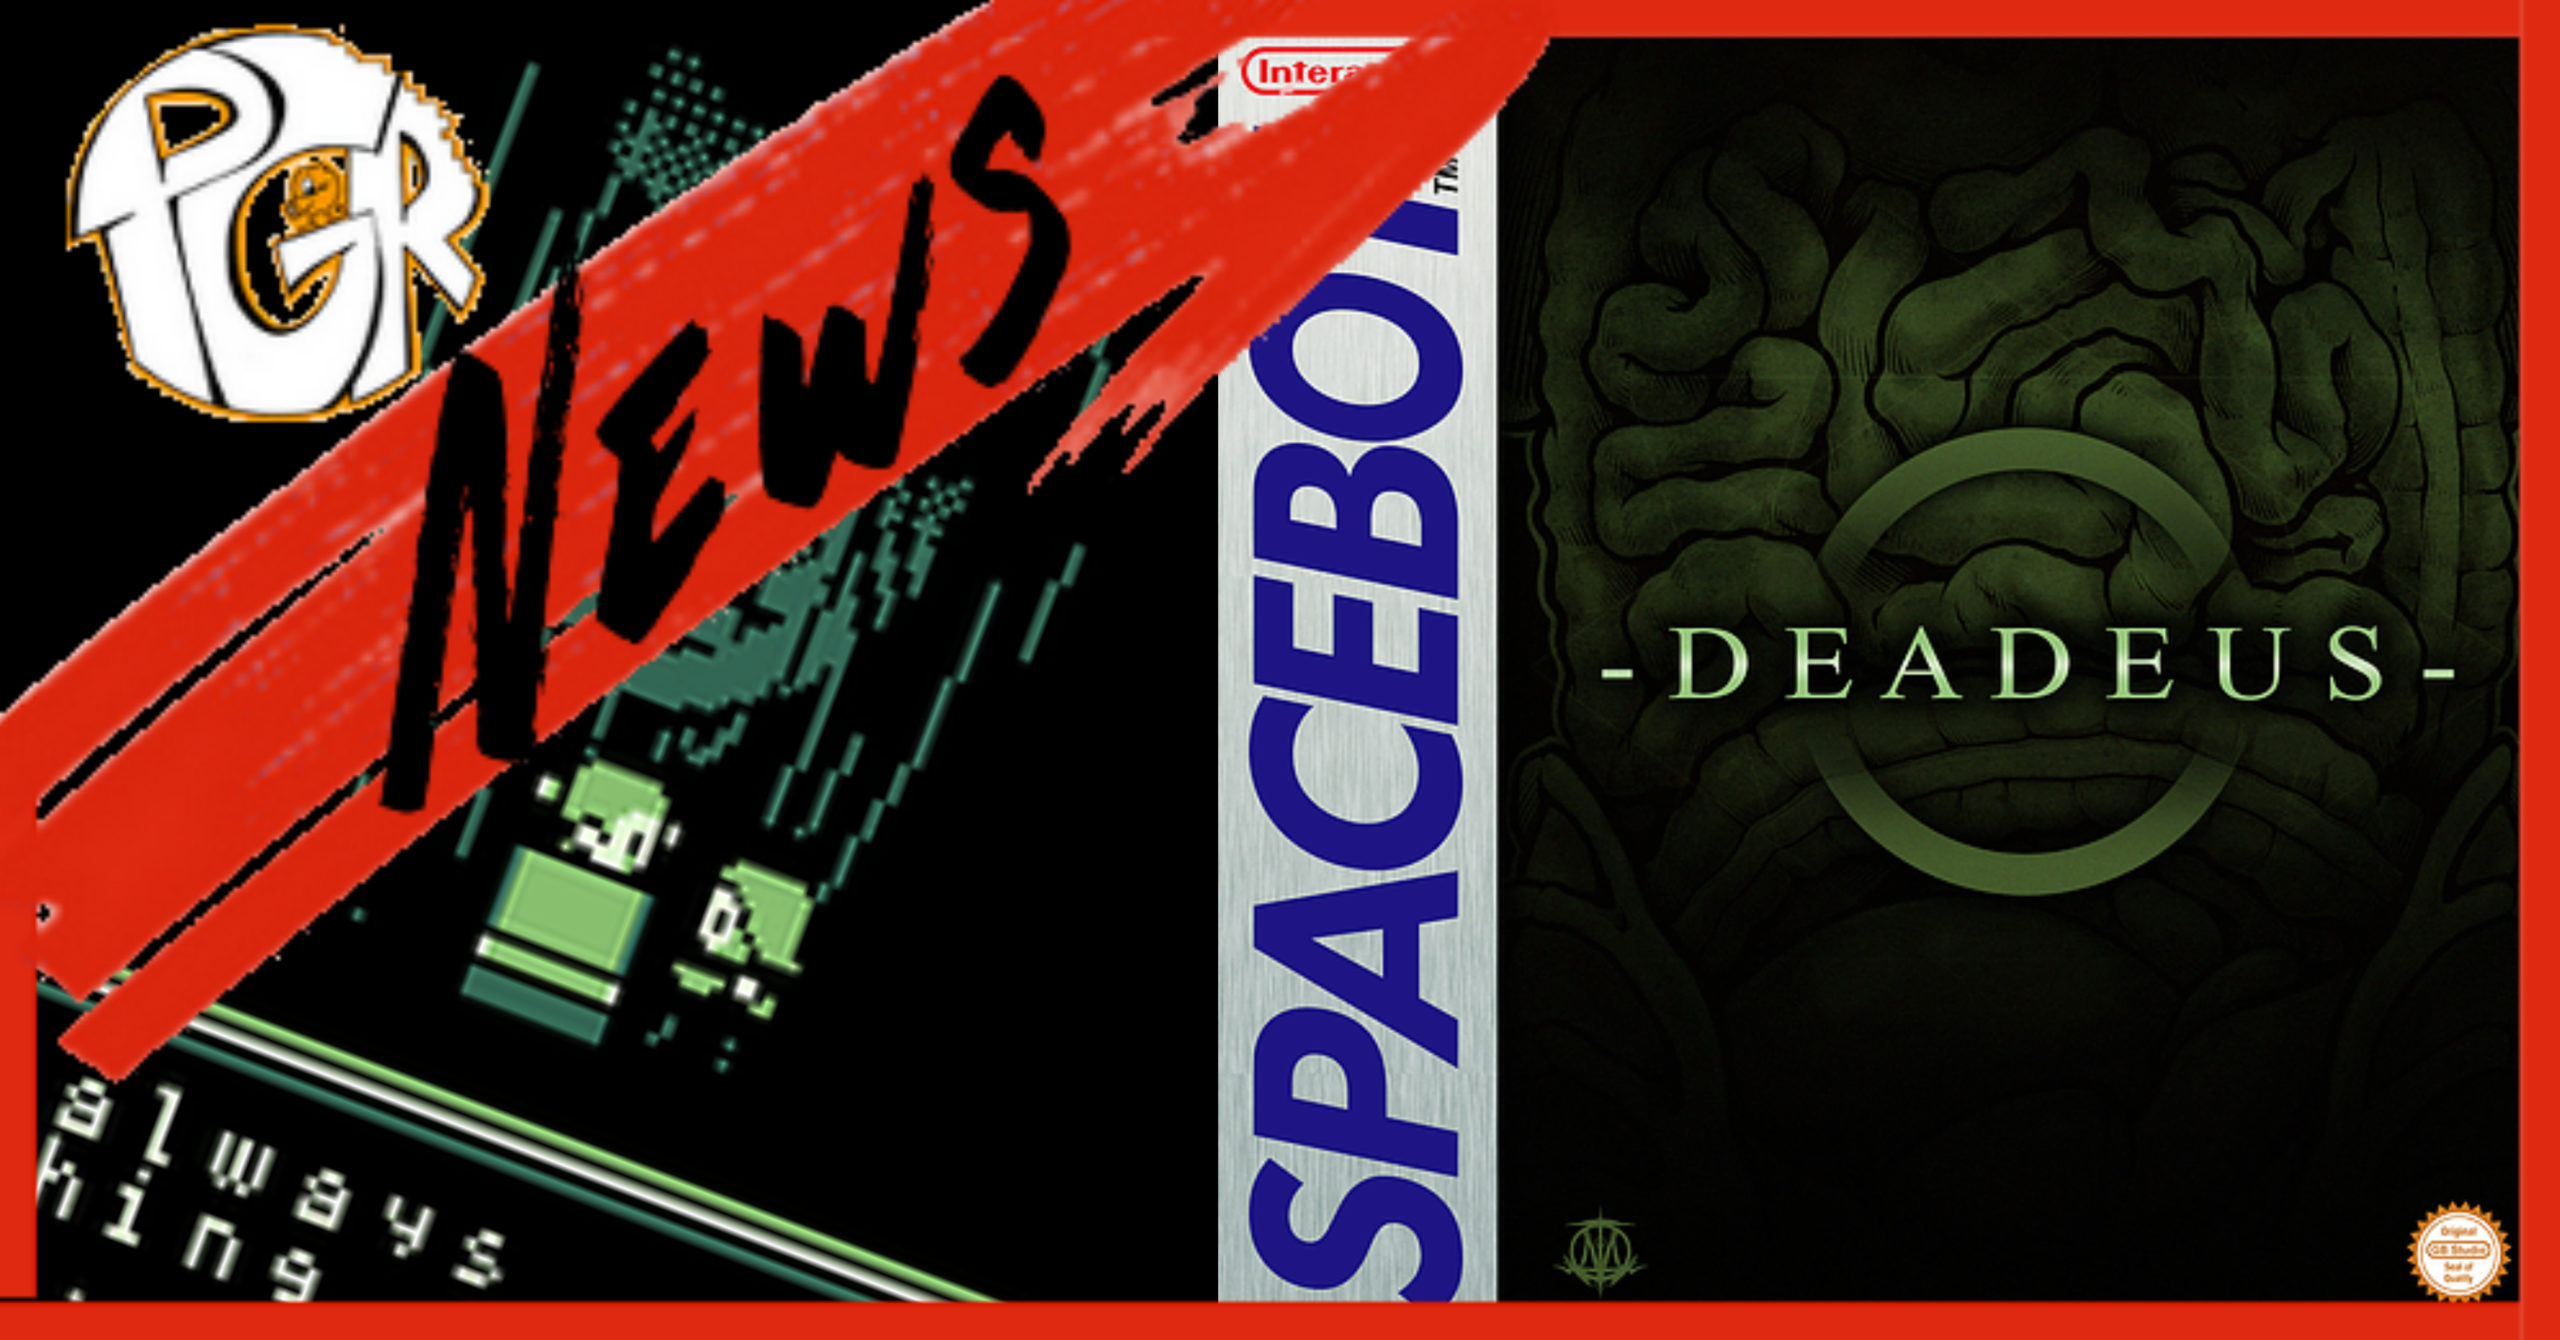 Spacebot Interactive annonce une édition physique de Deadeus sur Gameboy